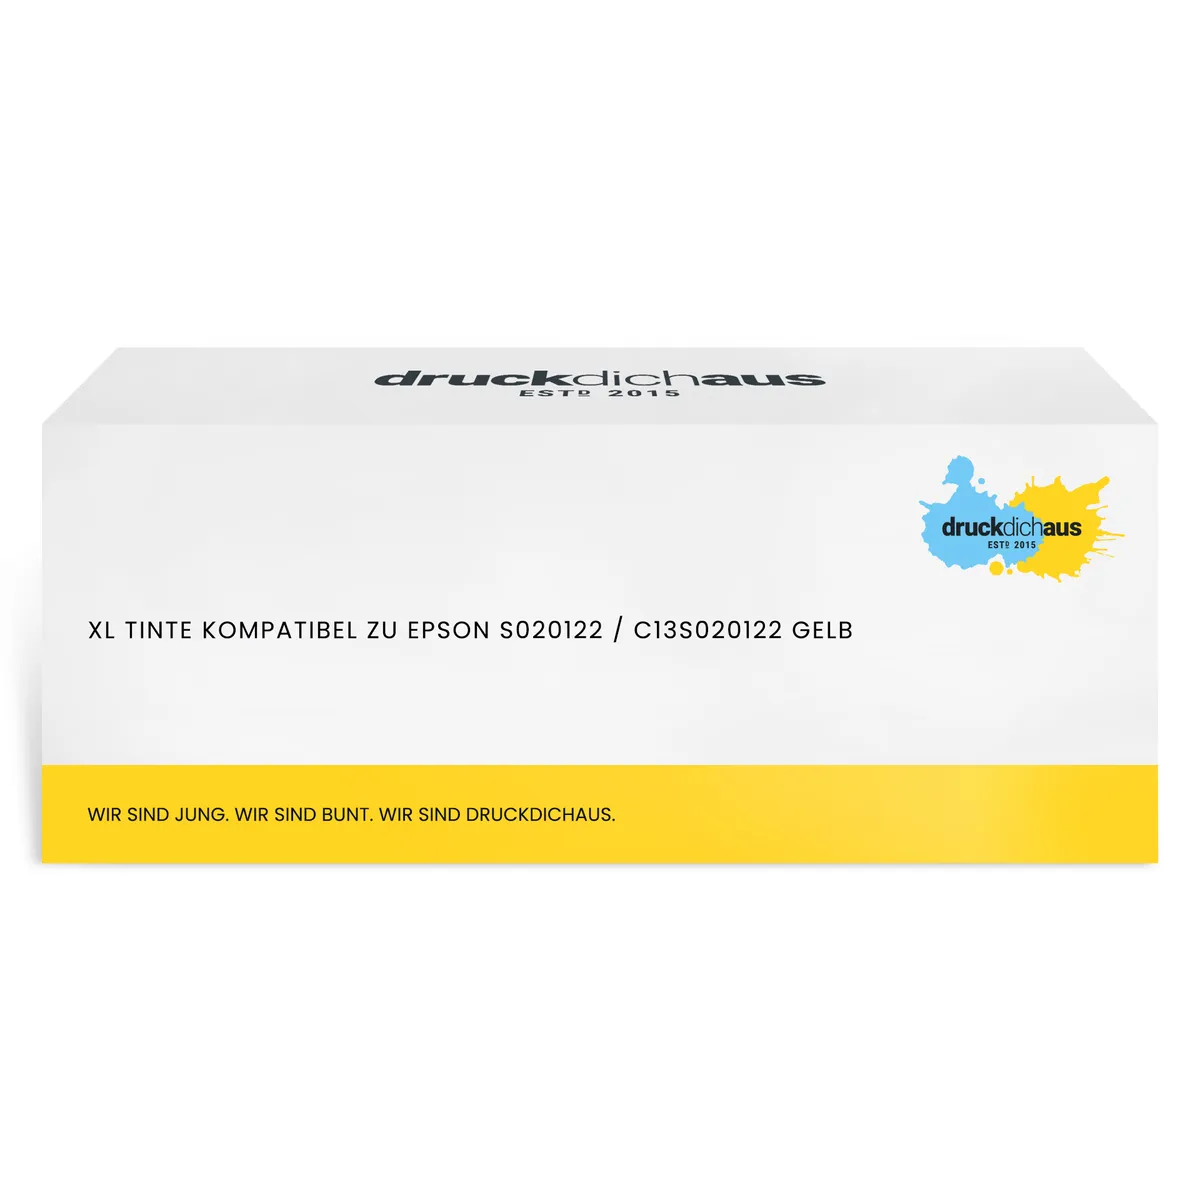 XL Tinte kompatibel zu Epson S020122 / C13S020122 gelb